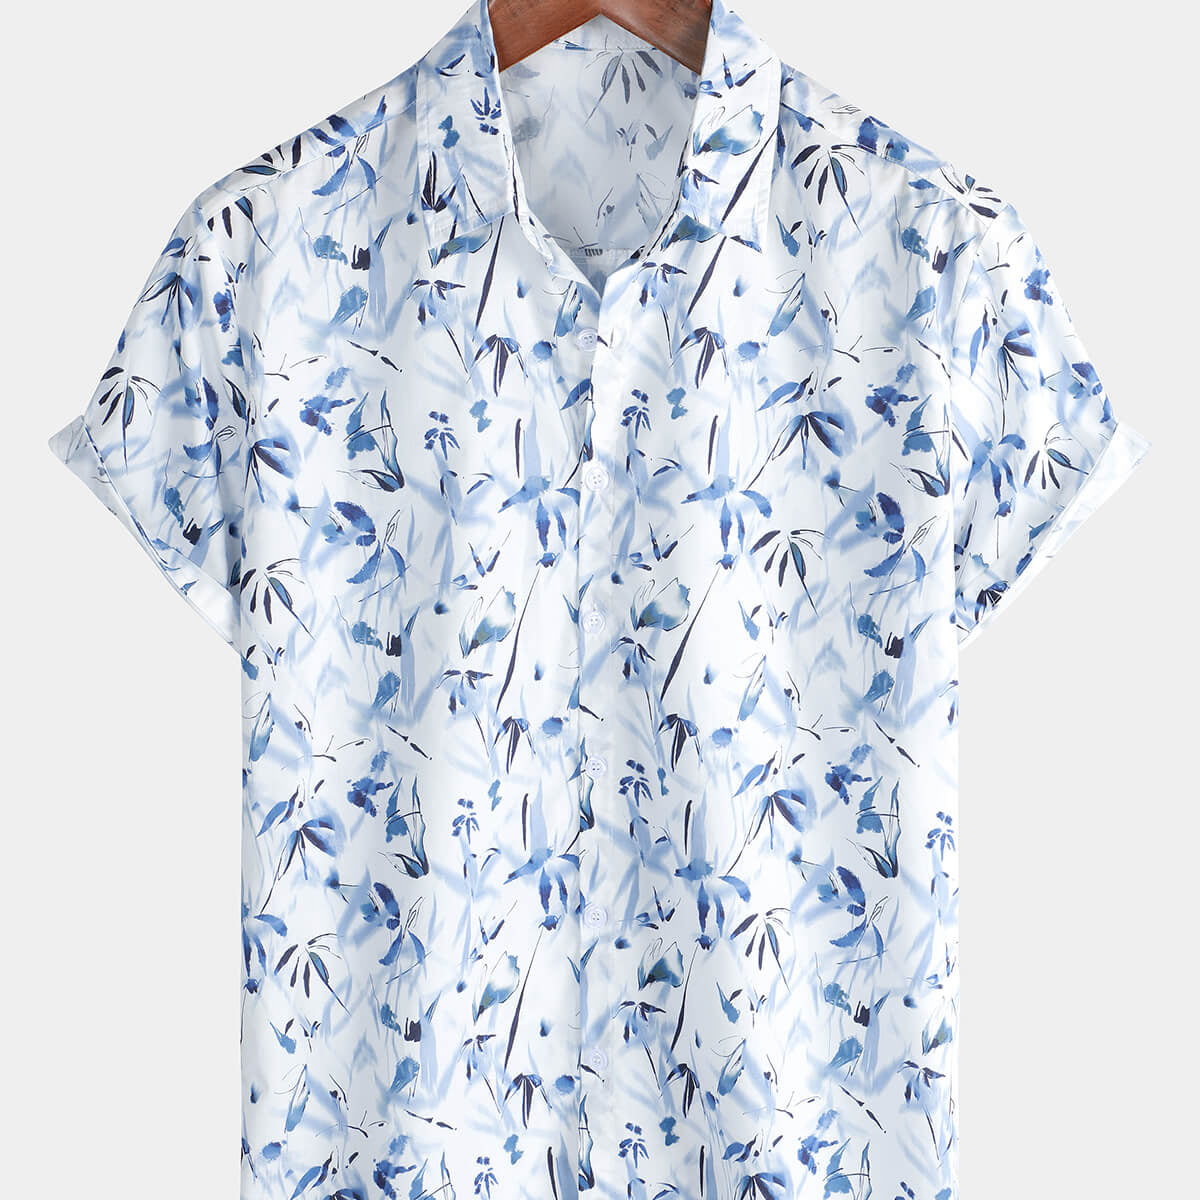 Men's Casual Summer Hawaiian Floral Button Up Short Sleeve Shirt